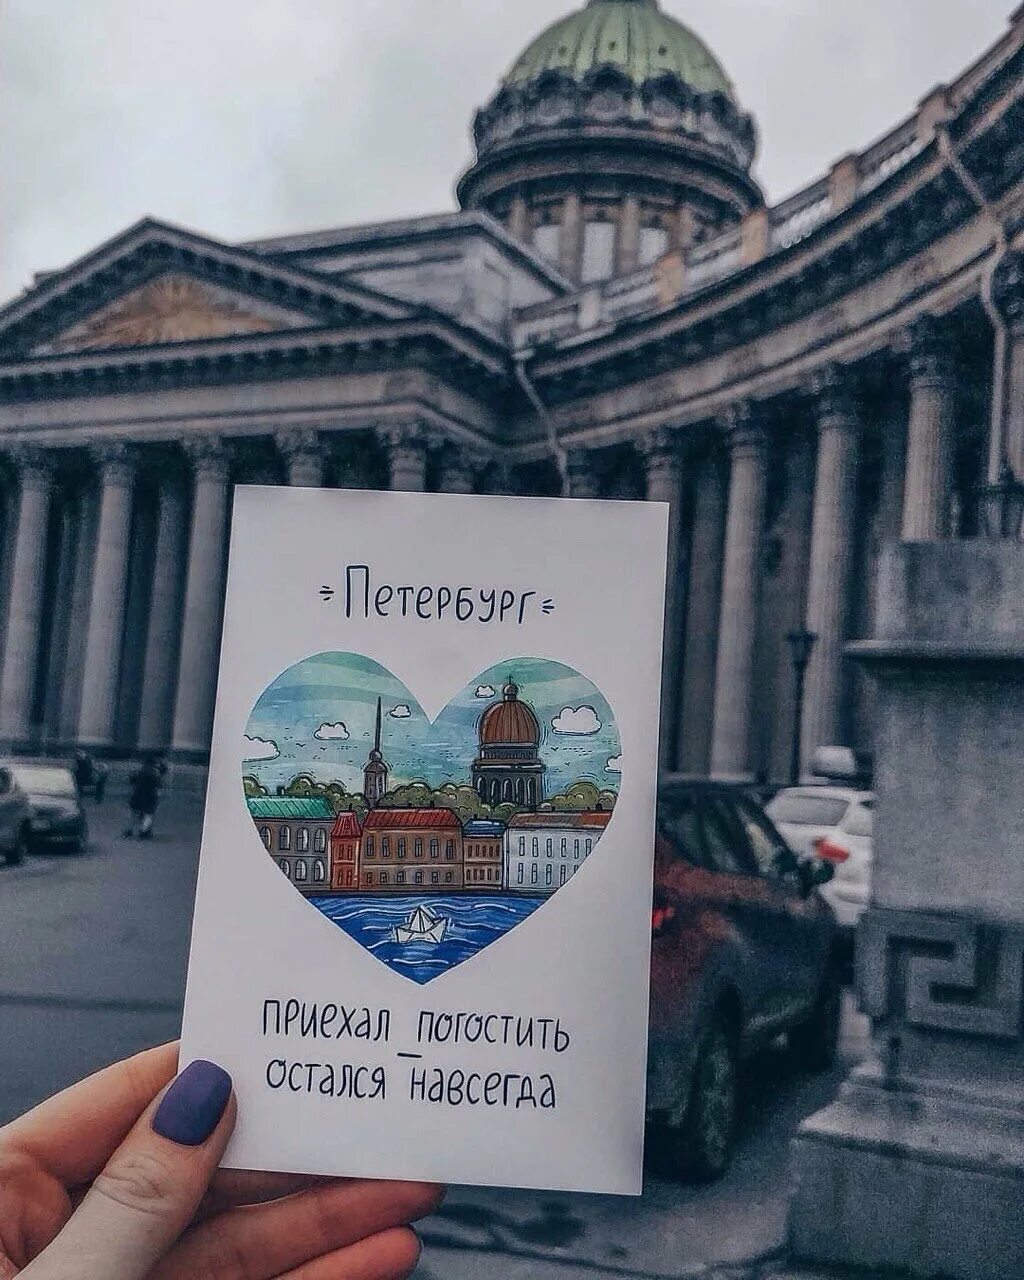 Приезд в питер. Петербург это по любви. Приезжайте в Питер. В Питер по любви в Москву. Санкт-Петербург любовь.